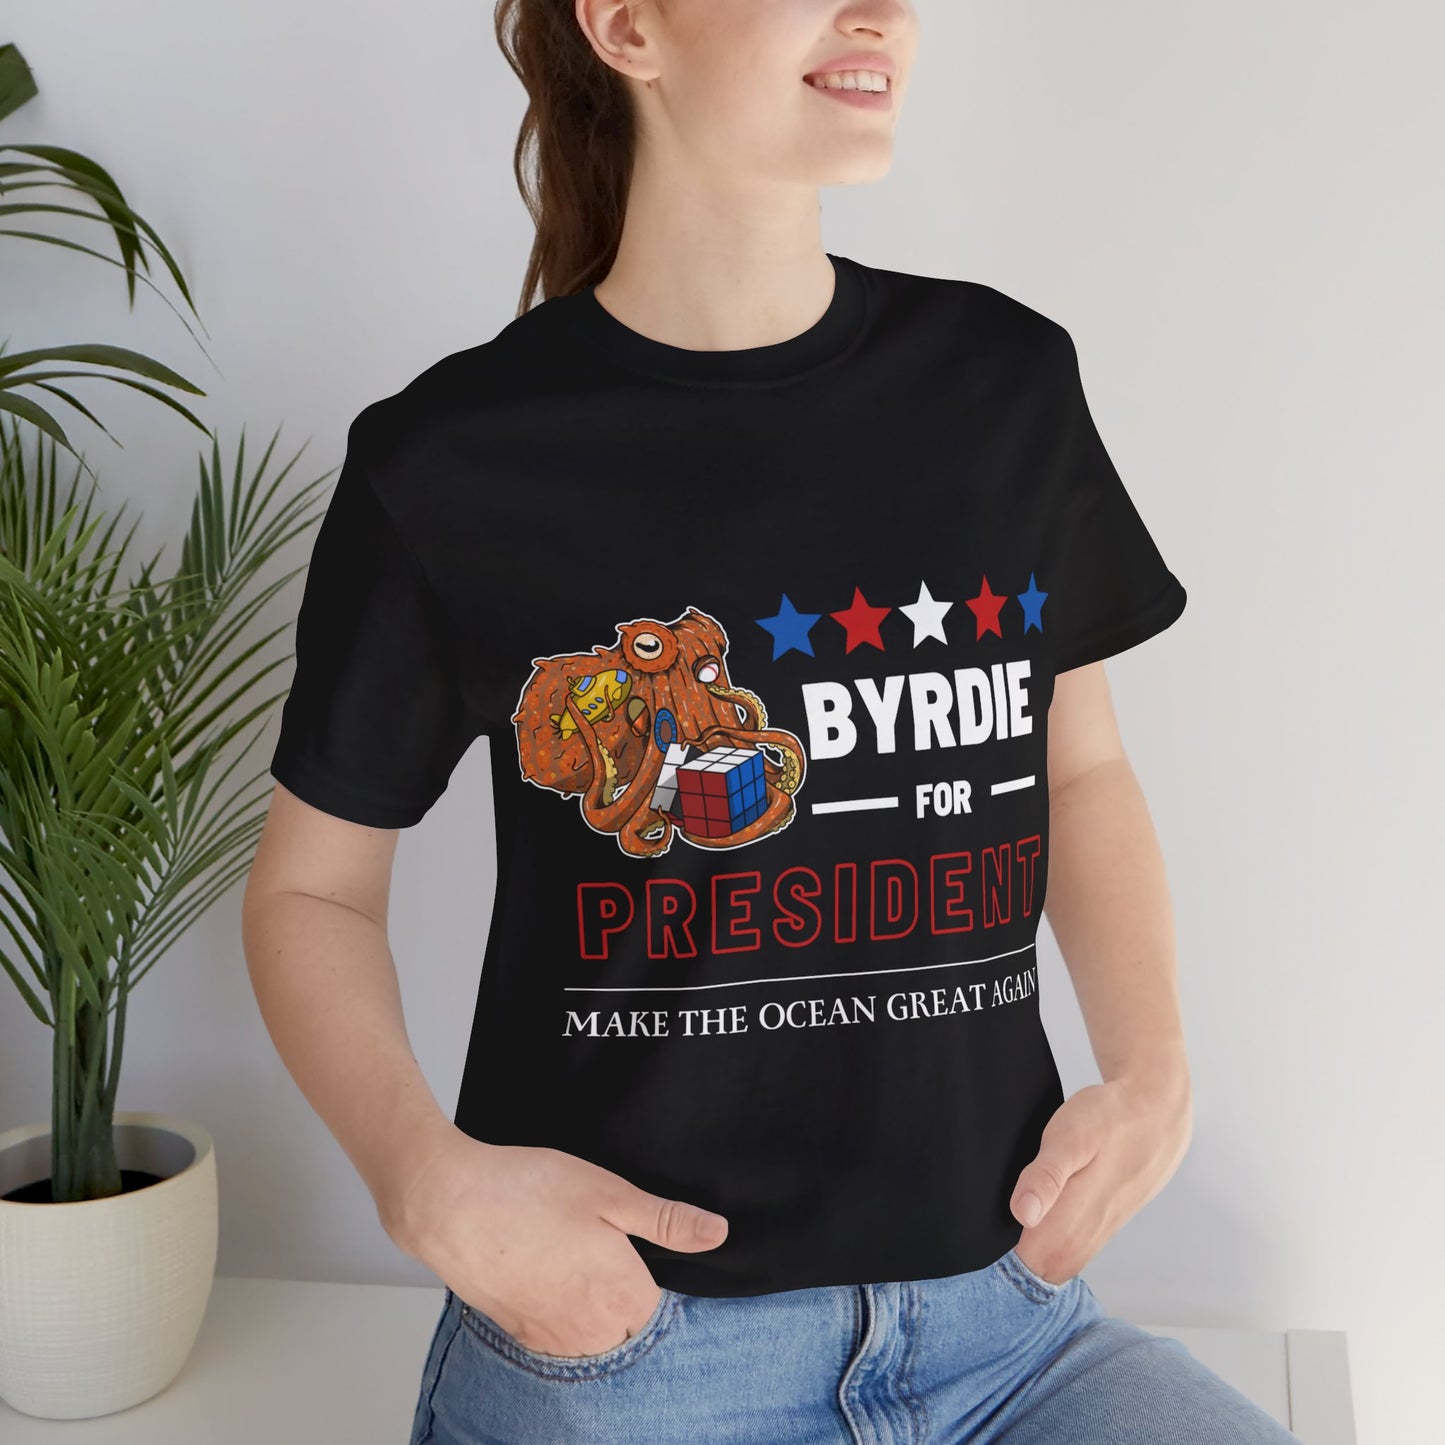 Byrdie for President - Ocean Great Again